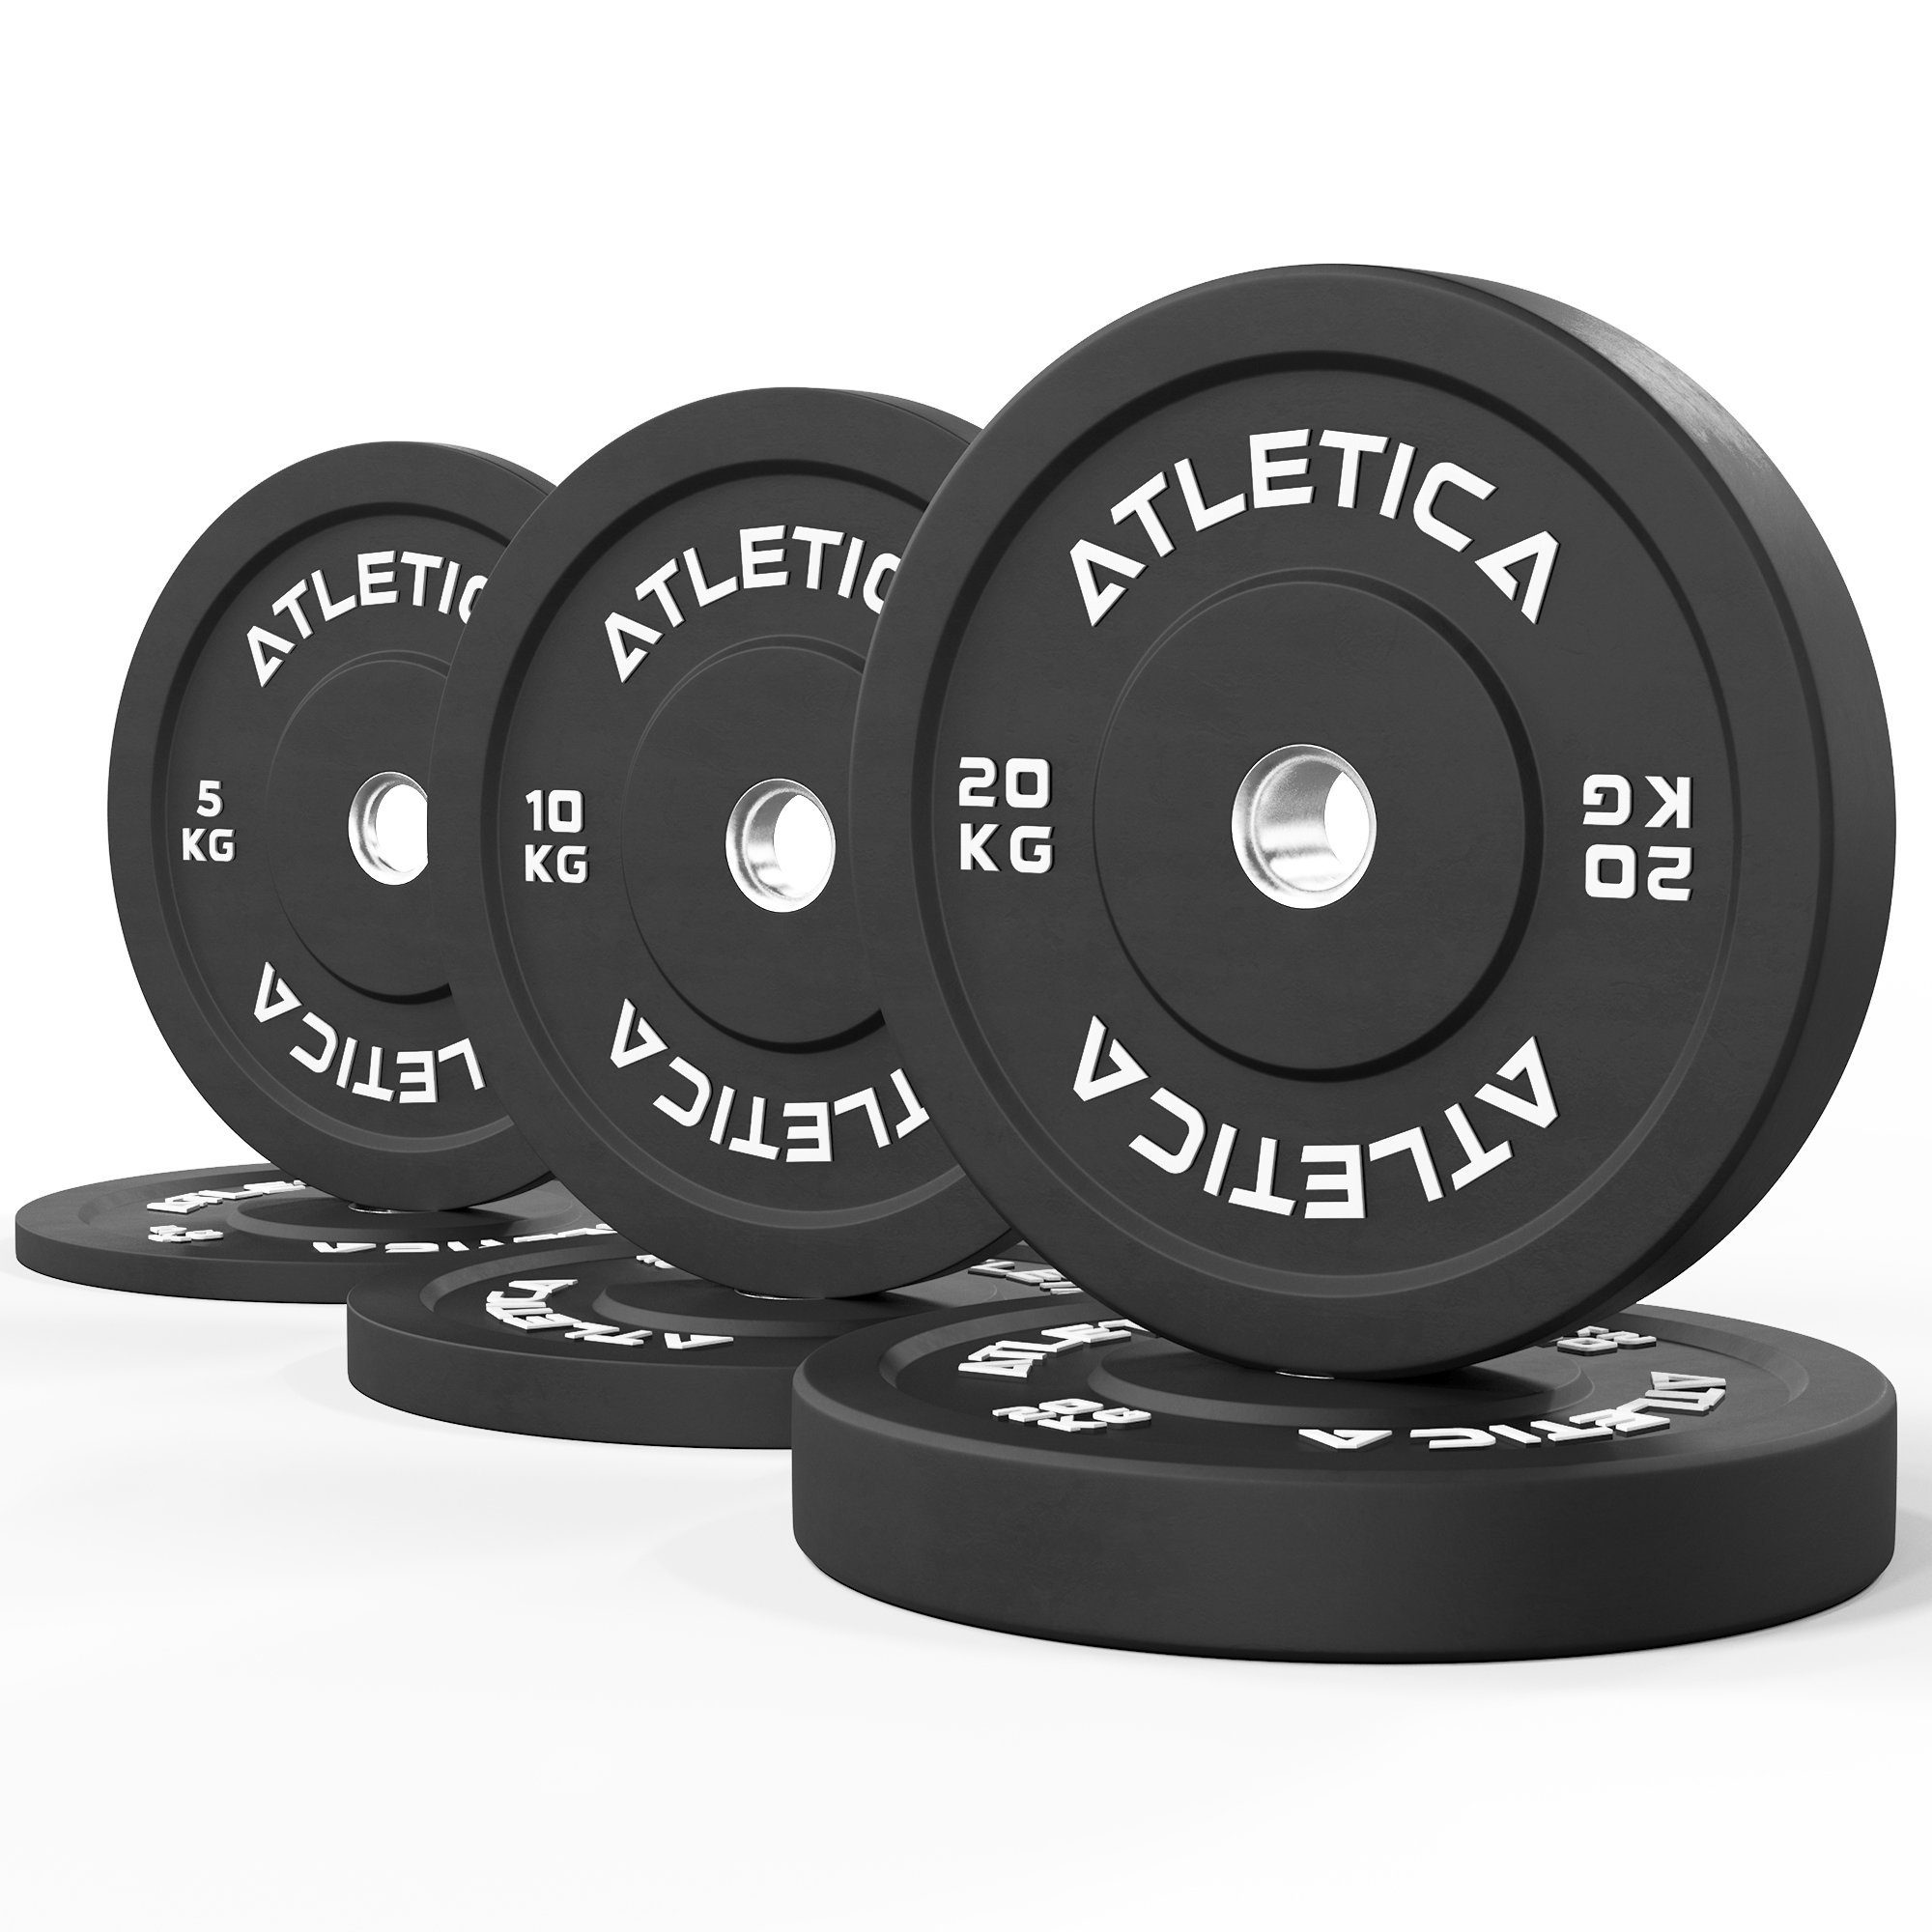 ATLETICA Hantelscheiben 70kg Bumper Plates Set ∣ aus 2 x 5 kg ∣ 2x 10 kg ∣ 2x 20 kg